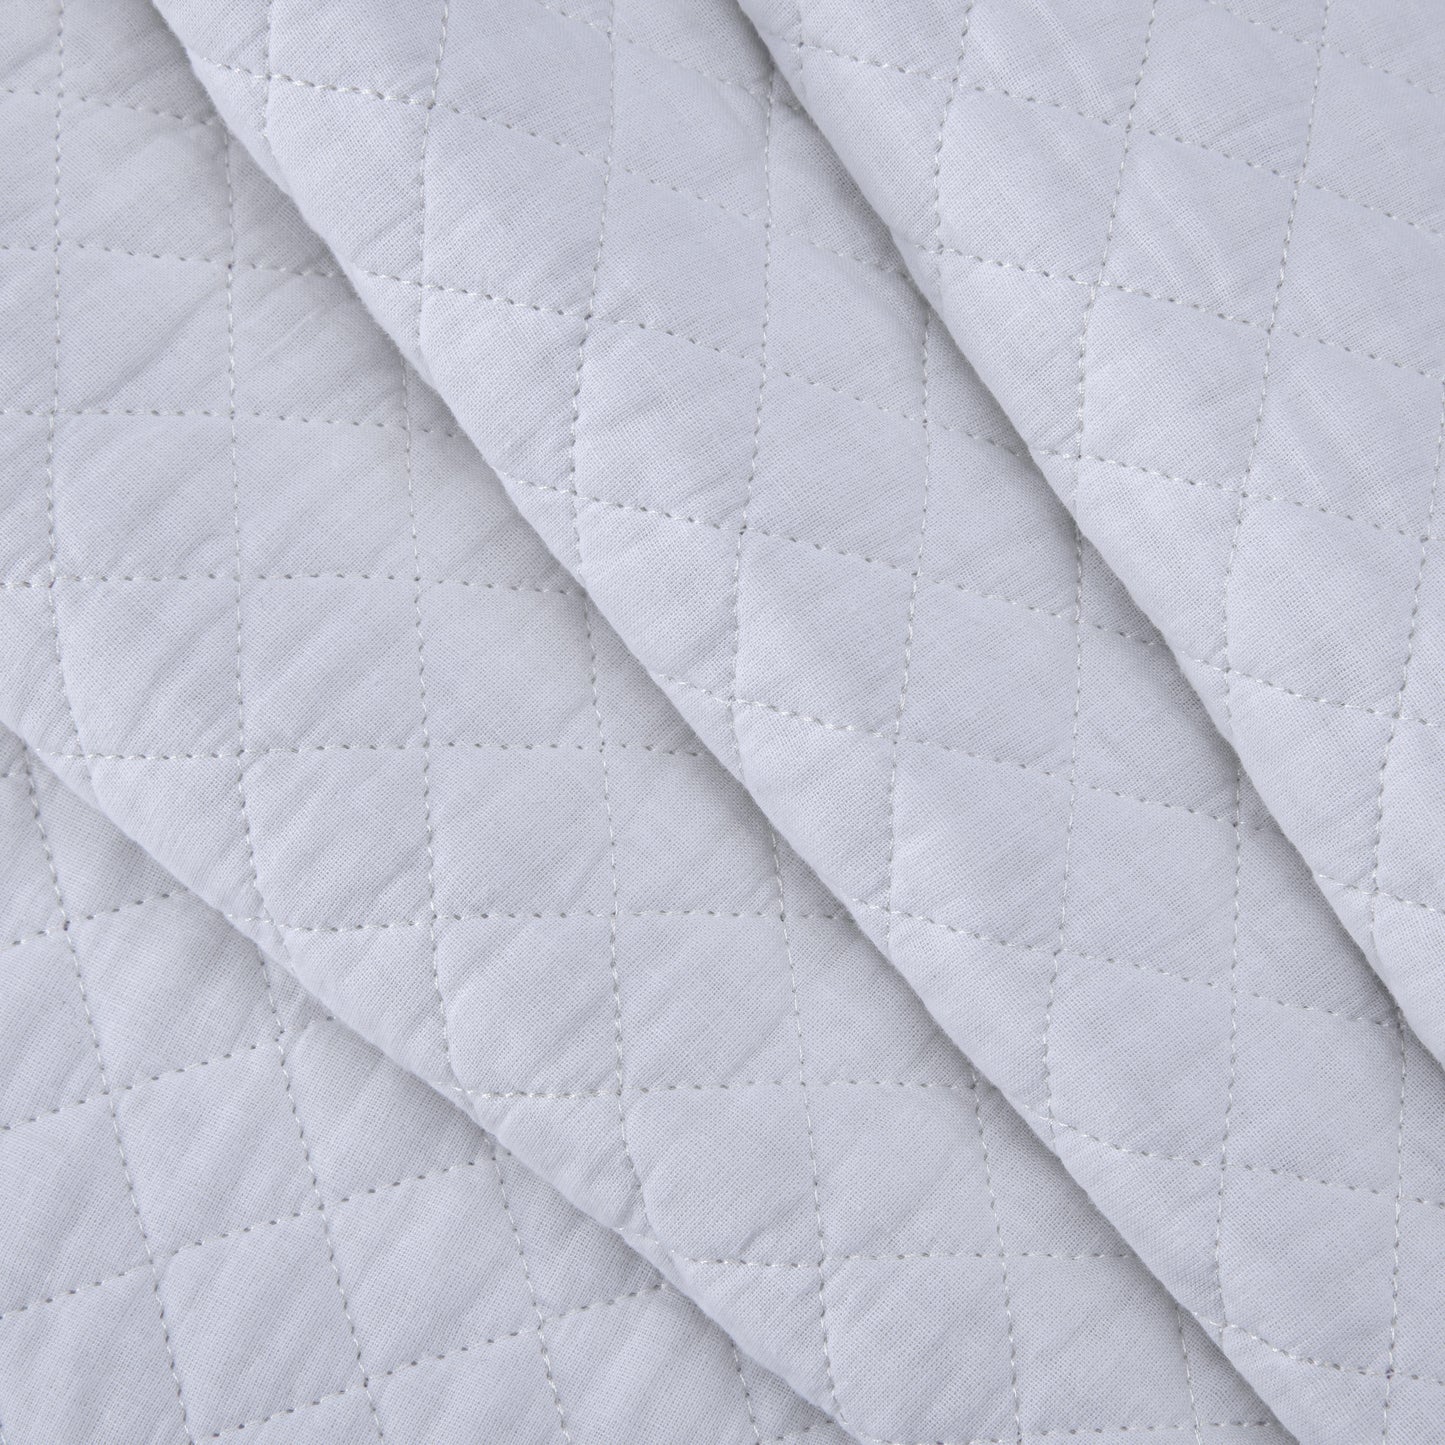 Avon Diamond Stitch Cotton Quilt Set